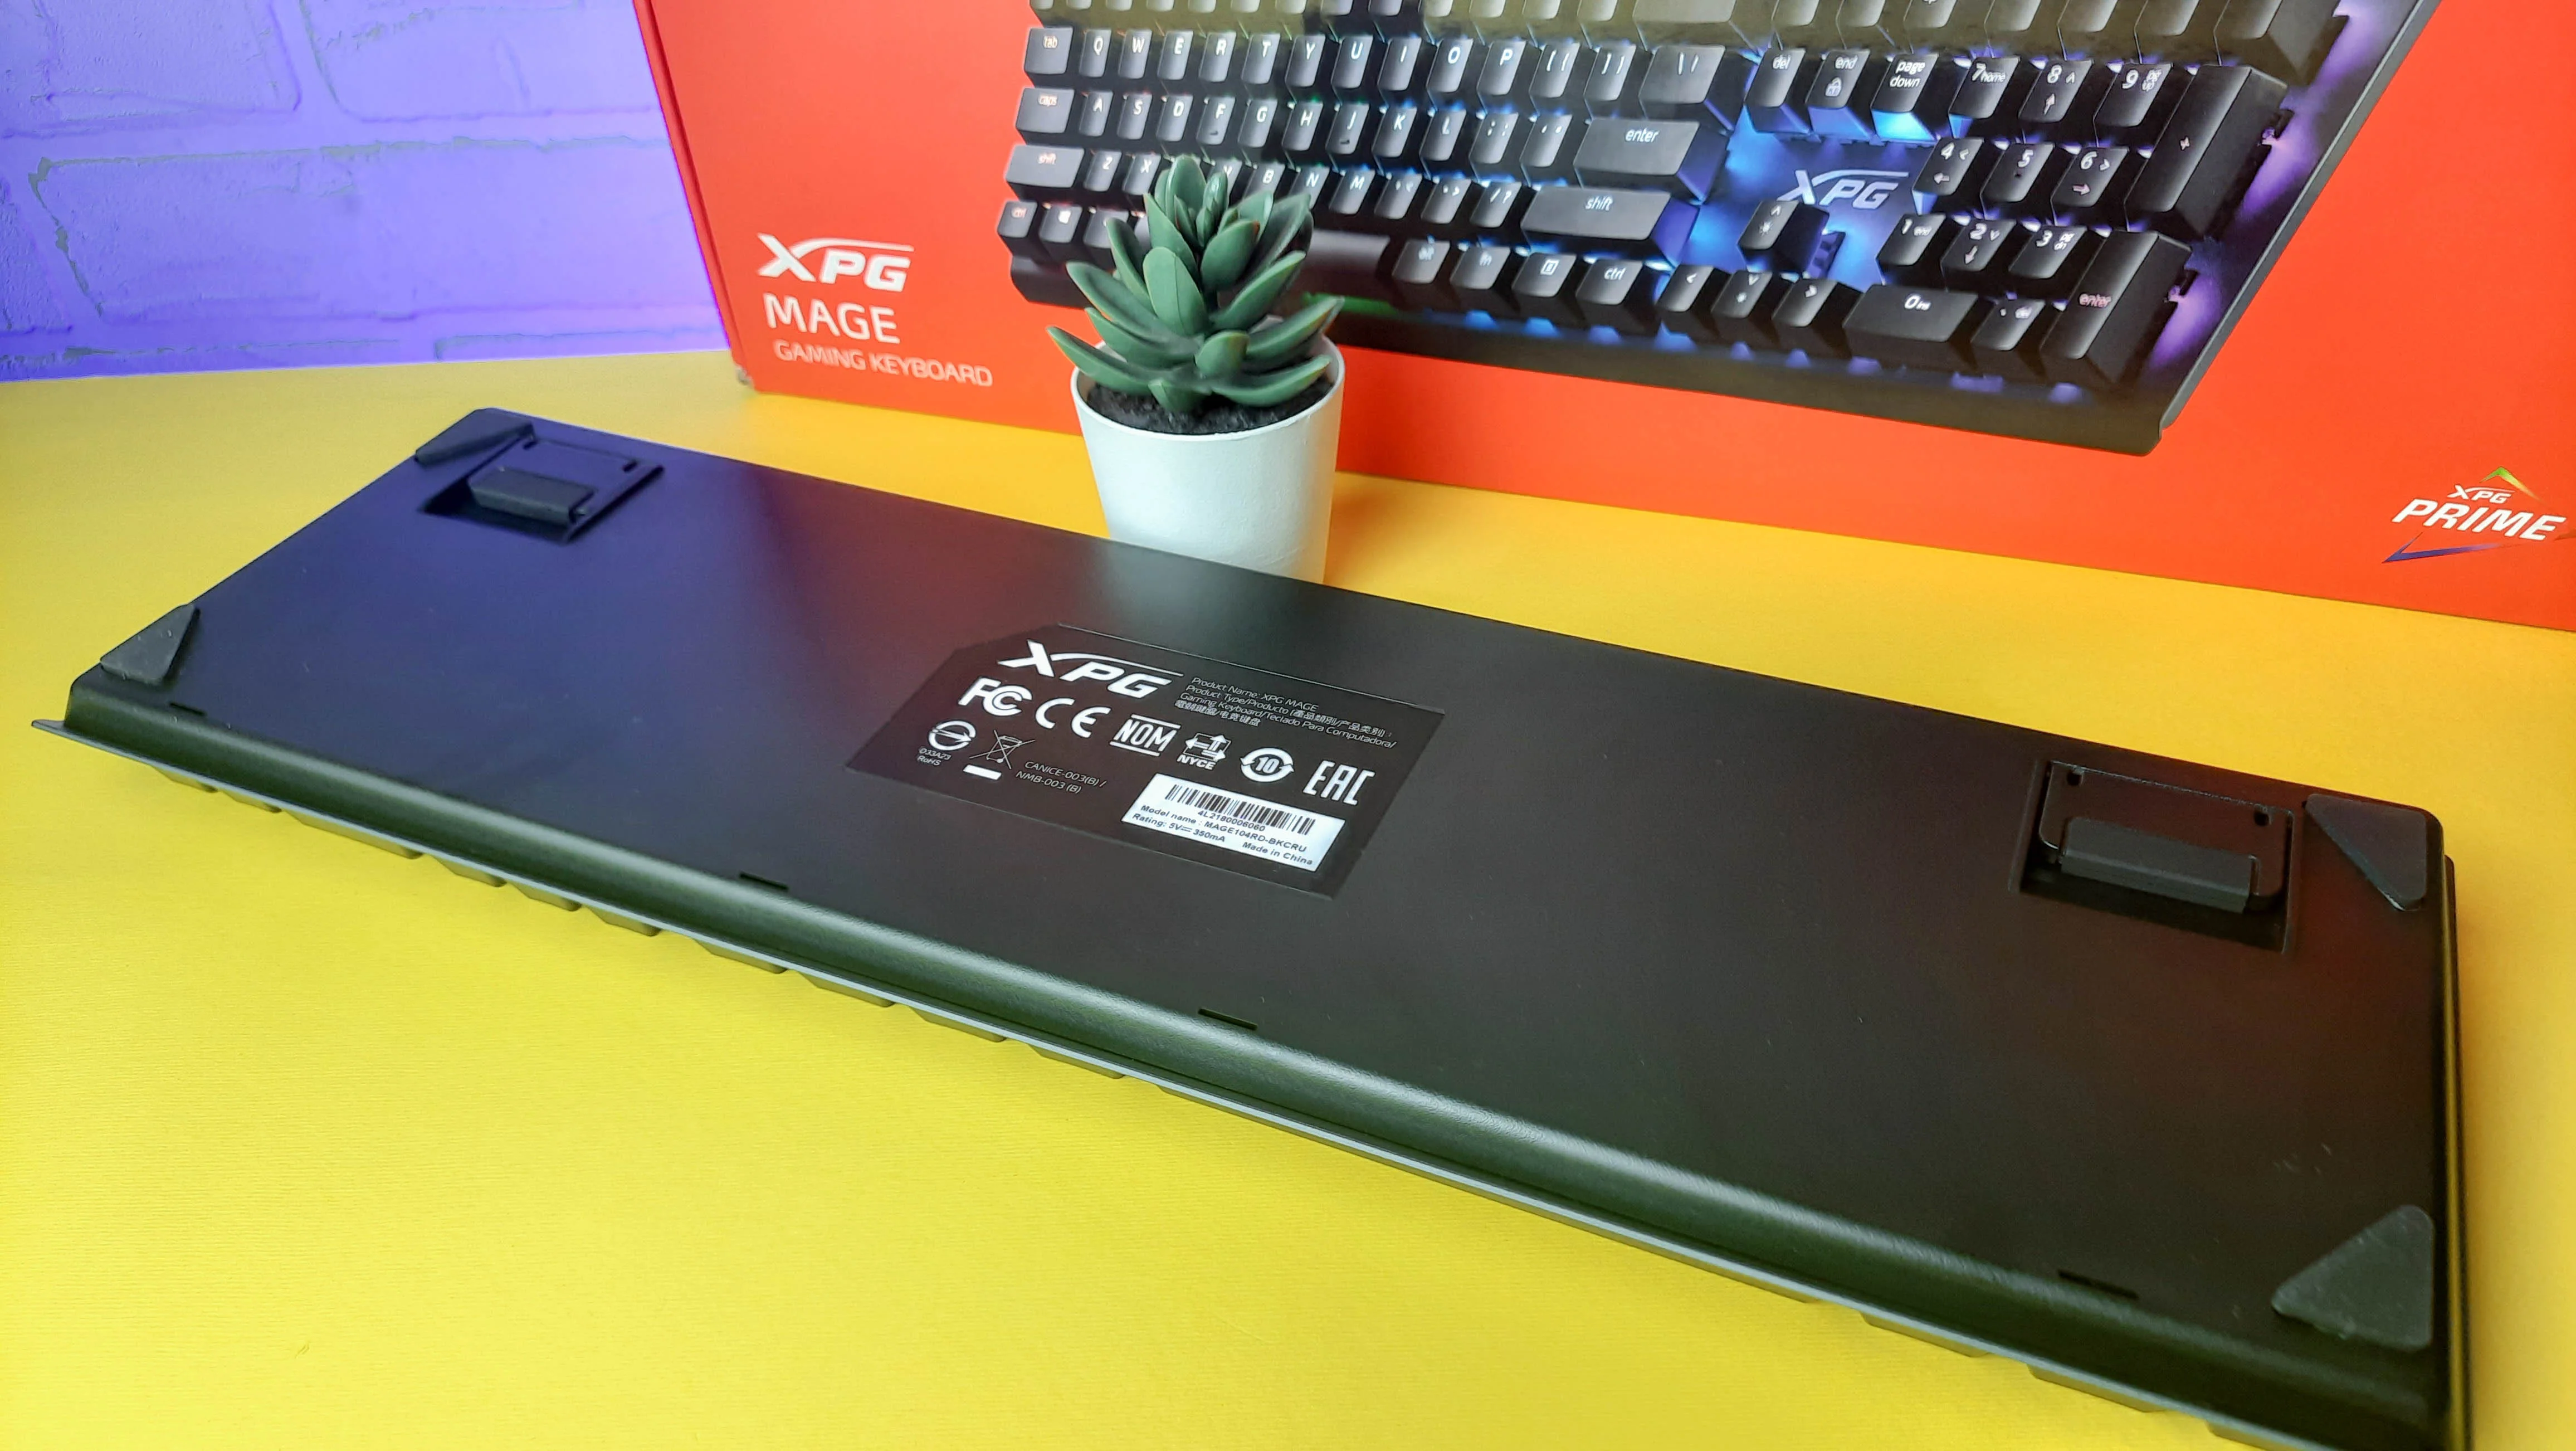 Обзор XPG Mage: игровая механическая клавиатура с RGB-подсветкой и съёмным кабелем - фото 4